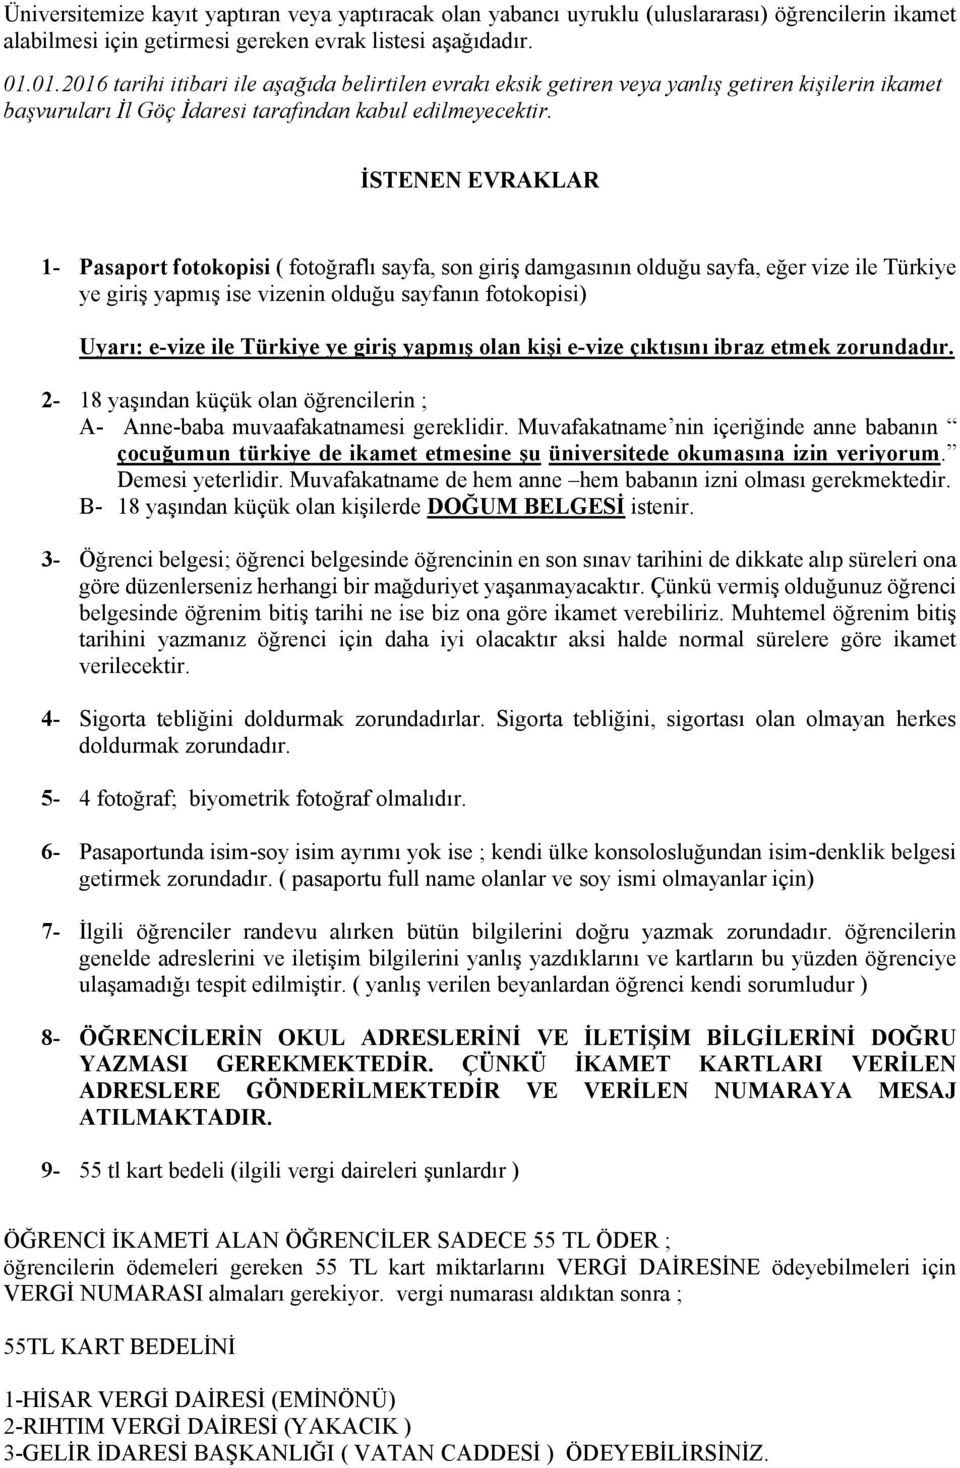 İSTENEN EVRAKLAR 1- Pasaport fotokopisi ( fotoğraflı sayfa, son giriş damgasının olduğu sayfa, eğer vize ile Türkiye ye giriş yapmış ise vizenin olduğu sayfanın fotokopisi) Uyarı: e-vize ile Türkiye